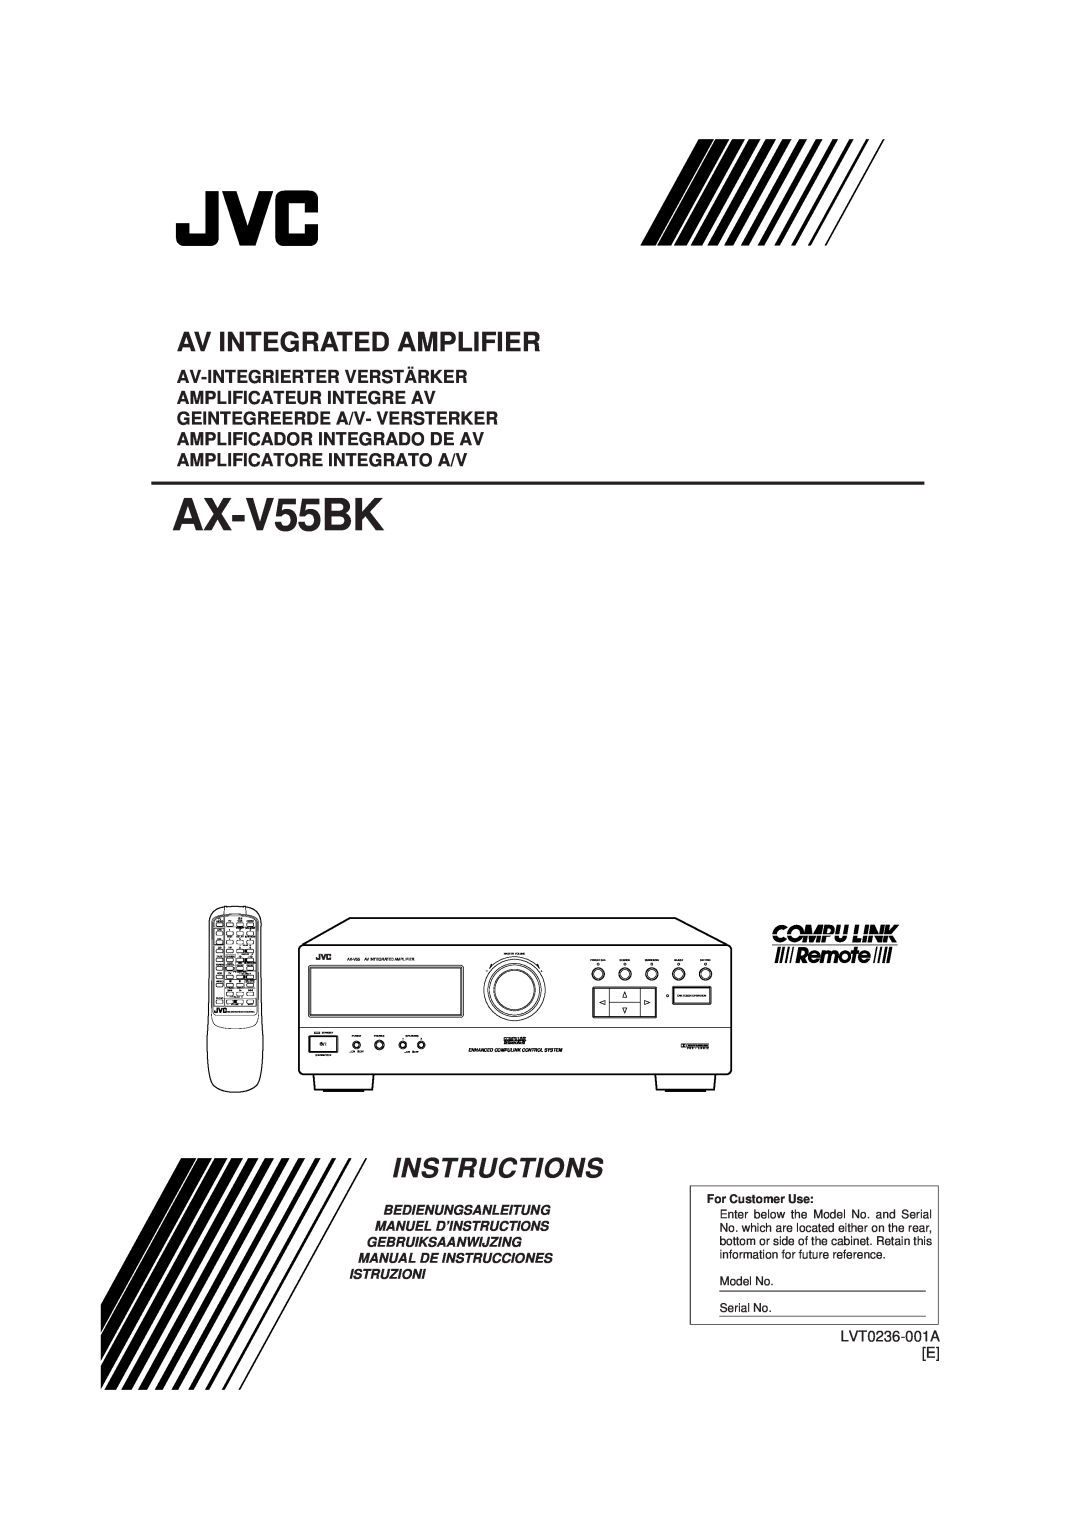 JVC AX-V55BK manual LVT0236-001A E, Av Integrated Amplifier, Instructions, Amplificatore Integrato A/V, For Customer Use 